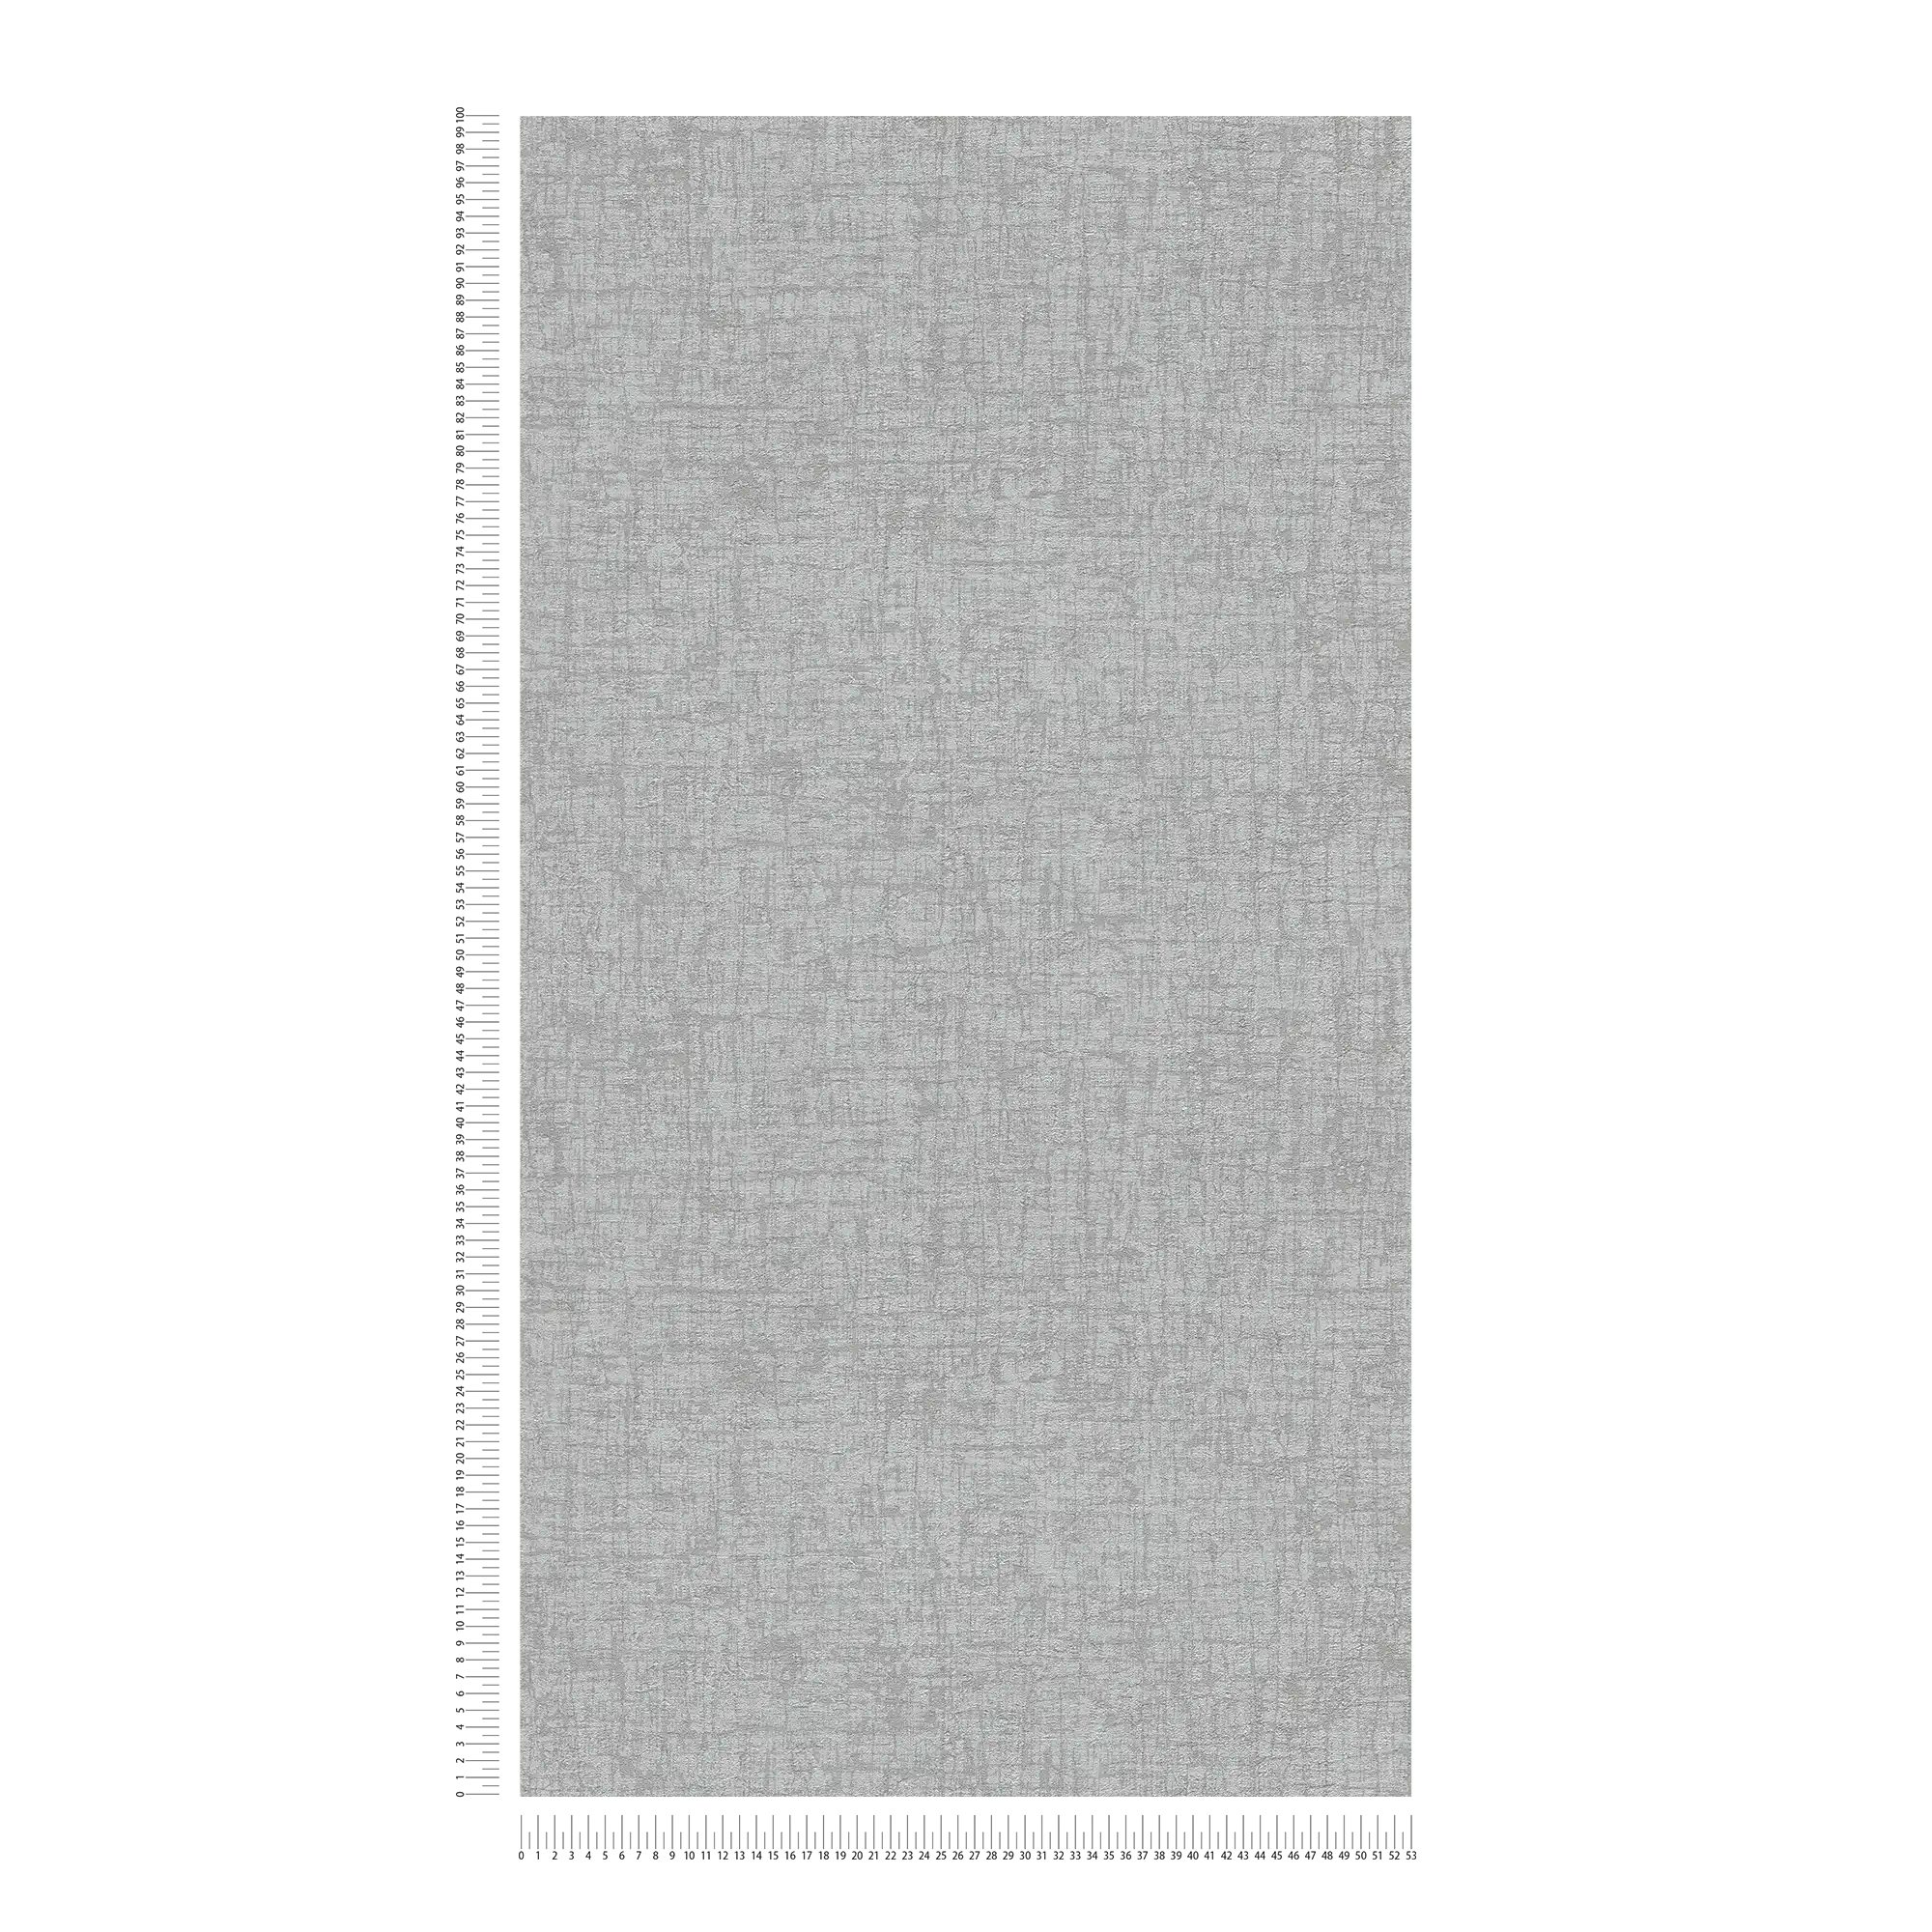             Strukturierte Vliestapete leicht glänzend in Textiloptik – Grau, Dunkelgrau
        